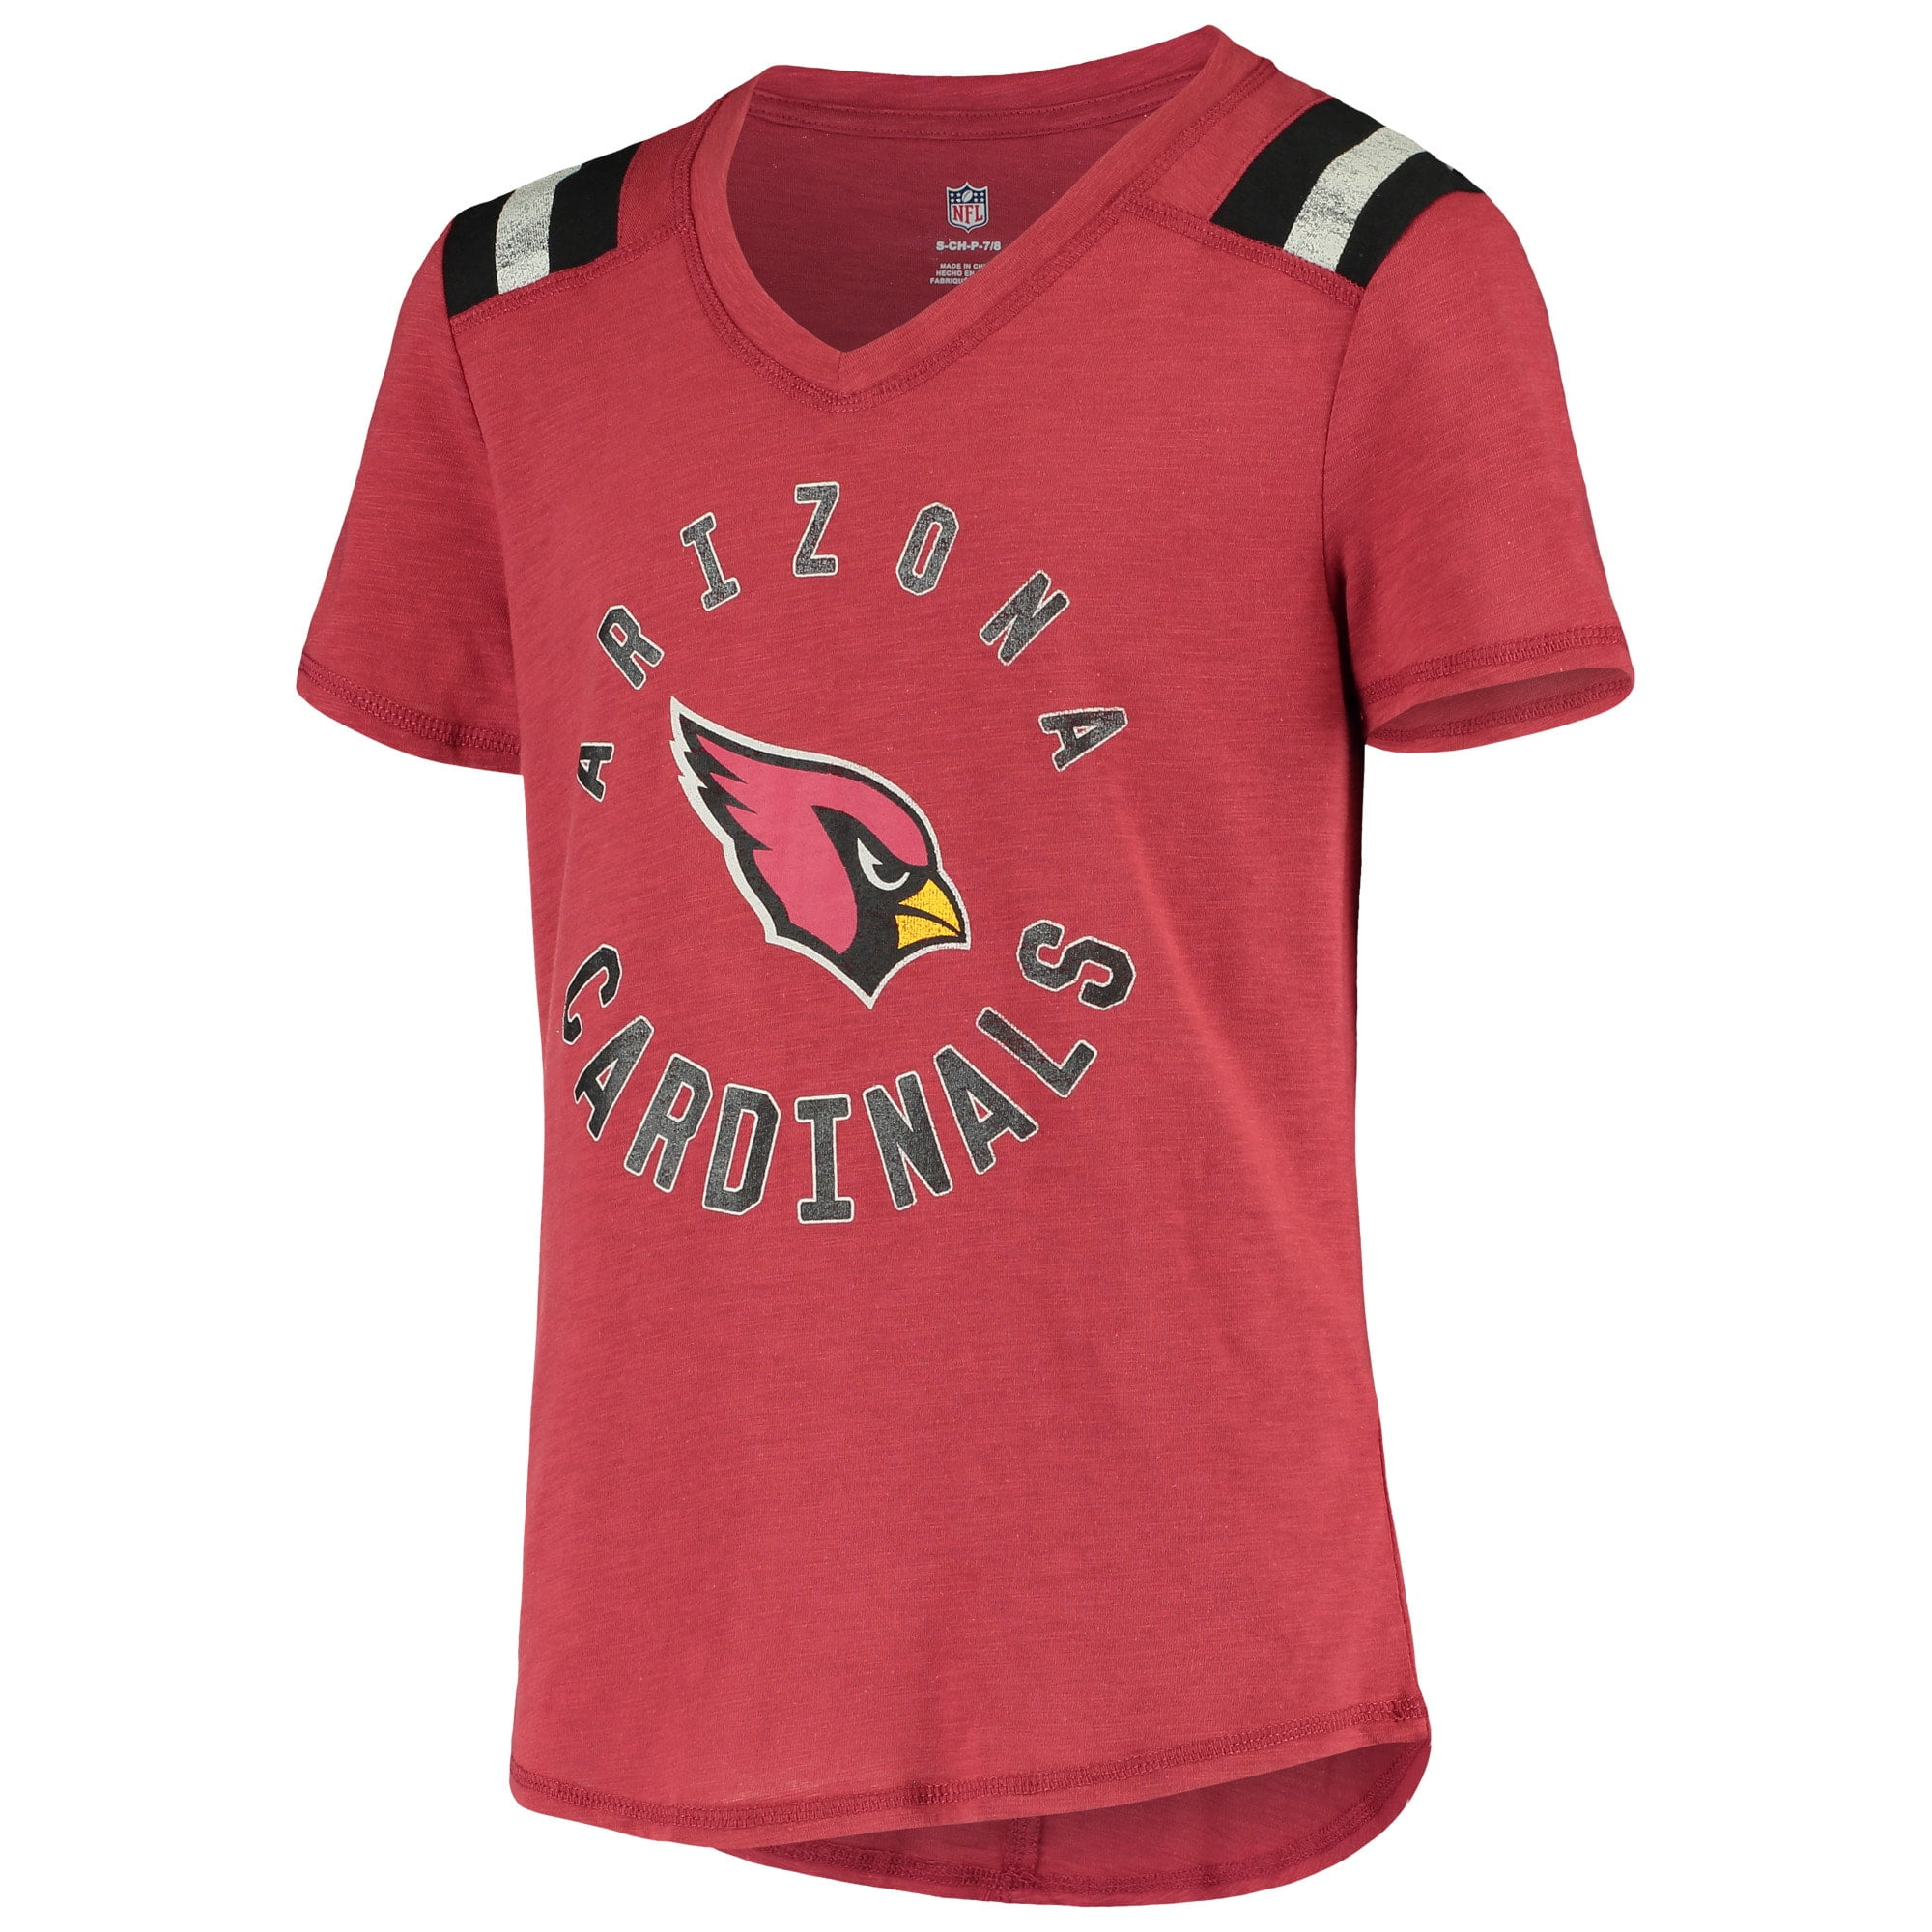 kids arizona cardinals shirt